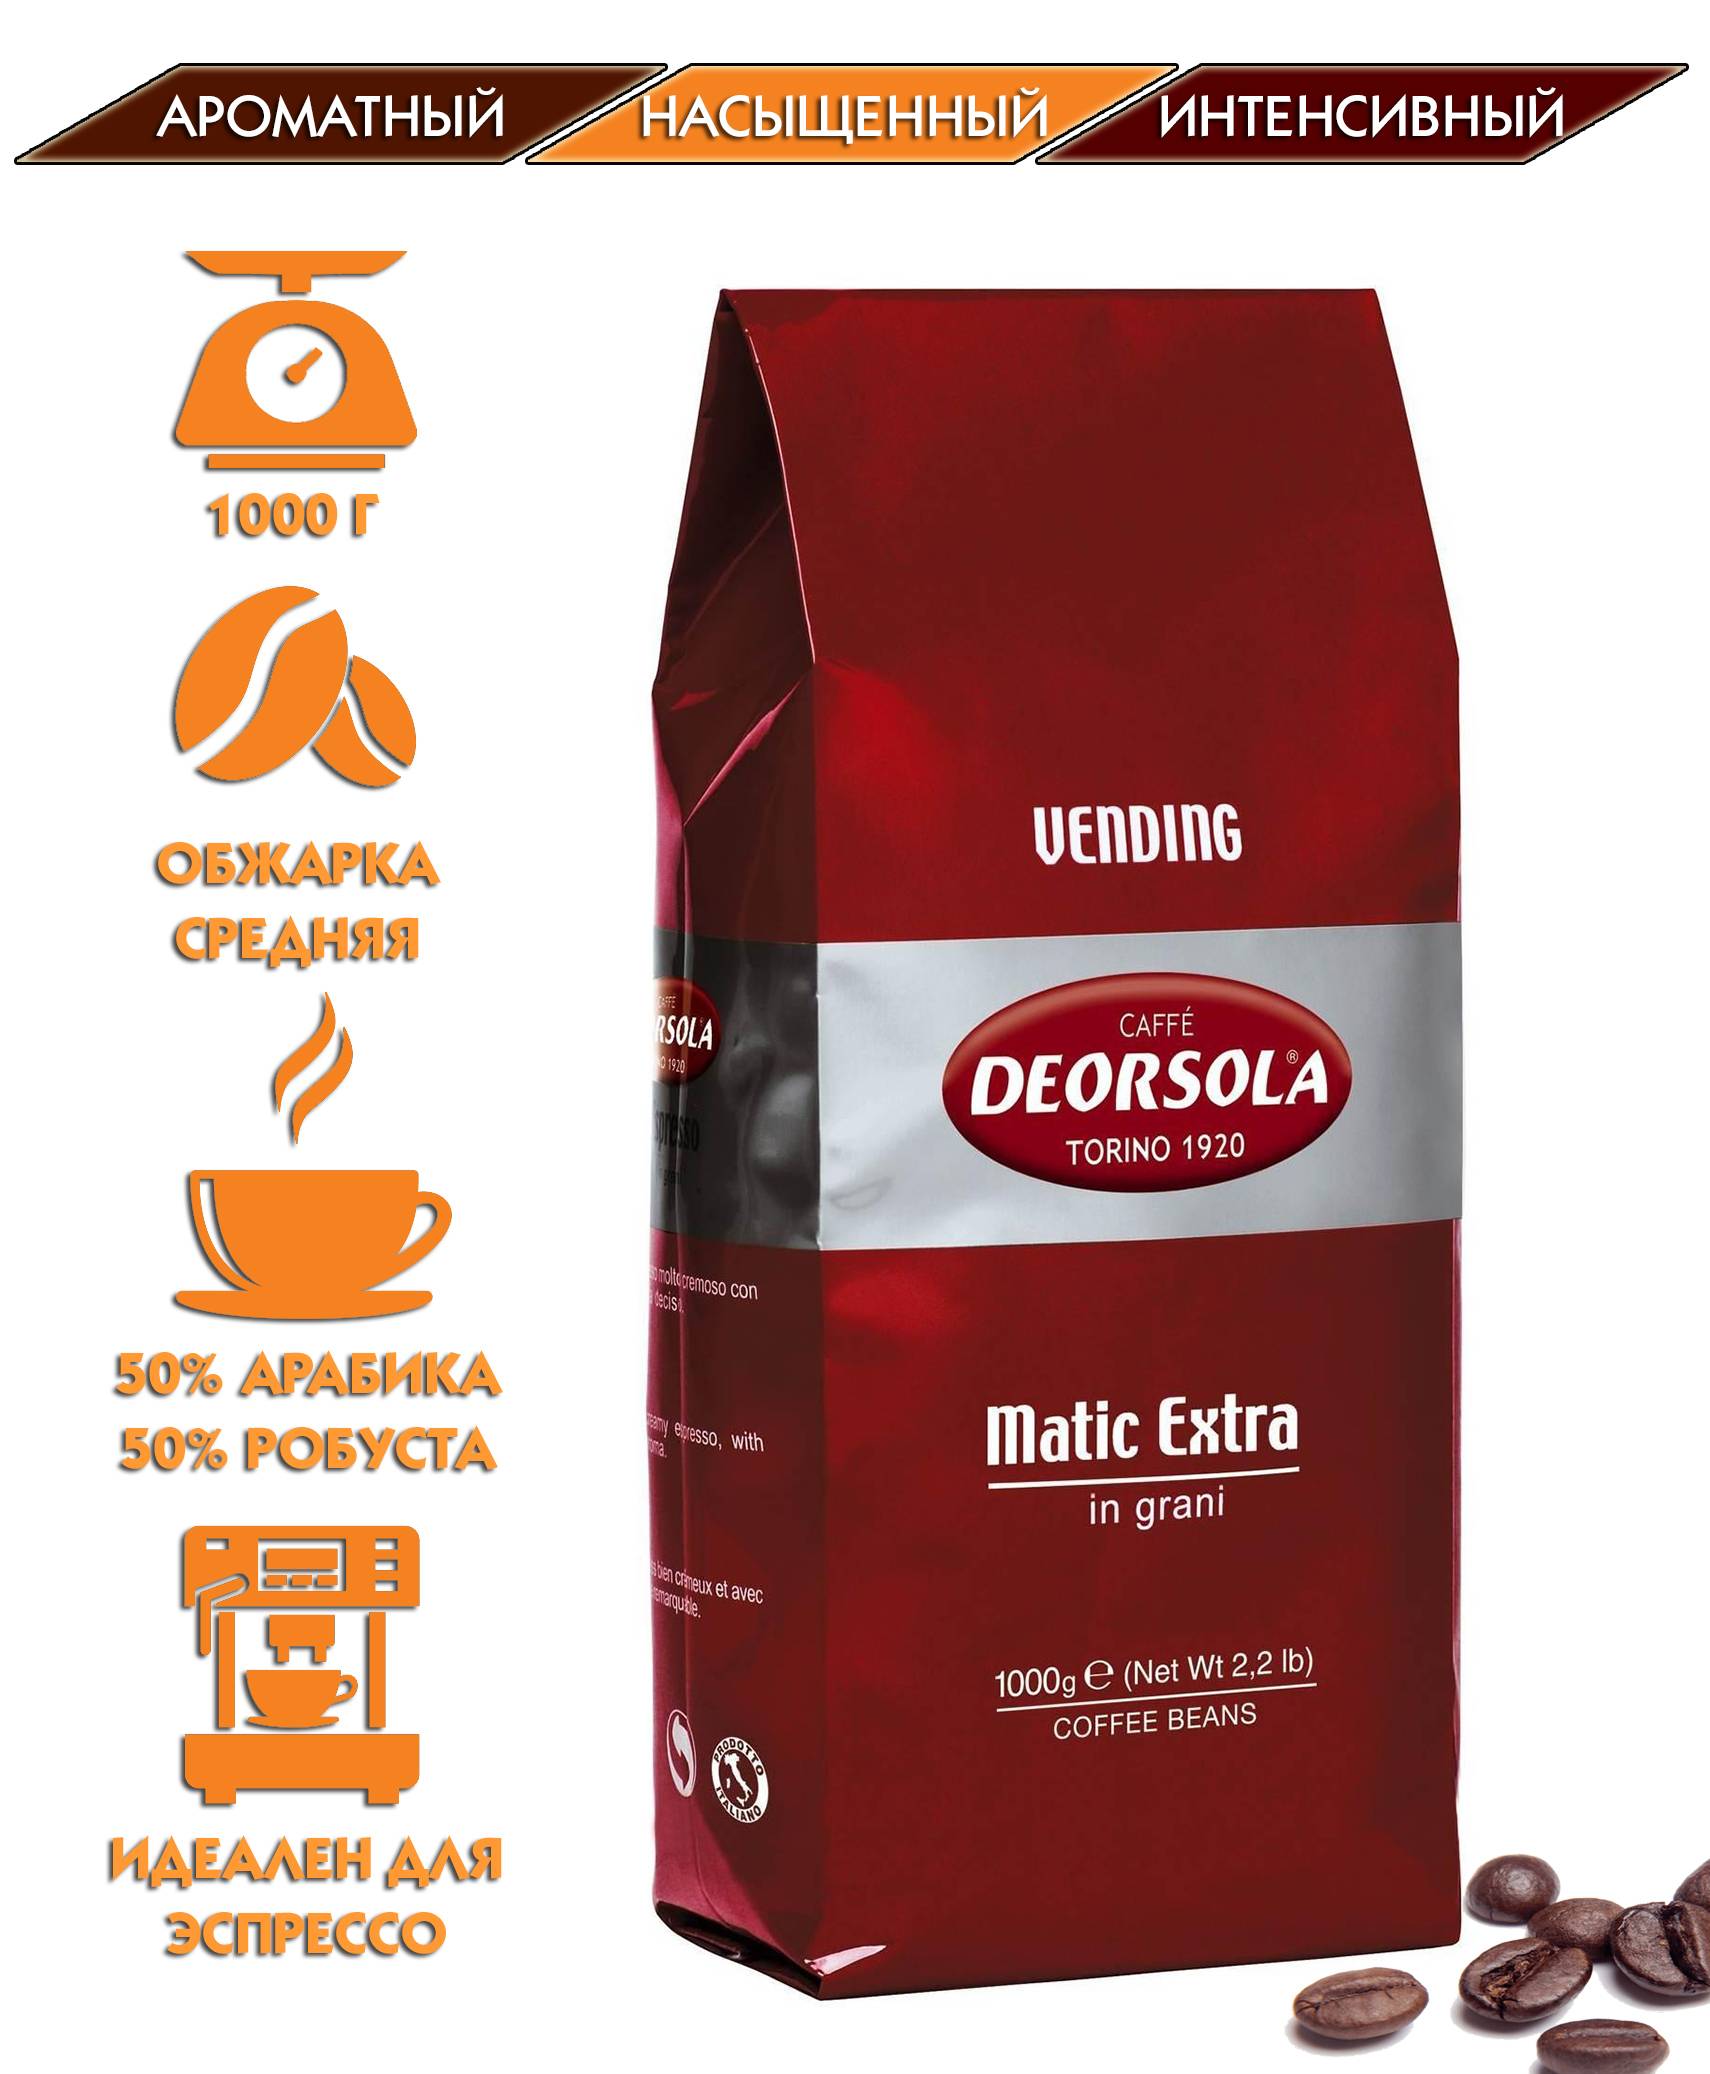 Deorsola, итальянский кофе, обзор линейки, характеристики деорсола